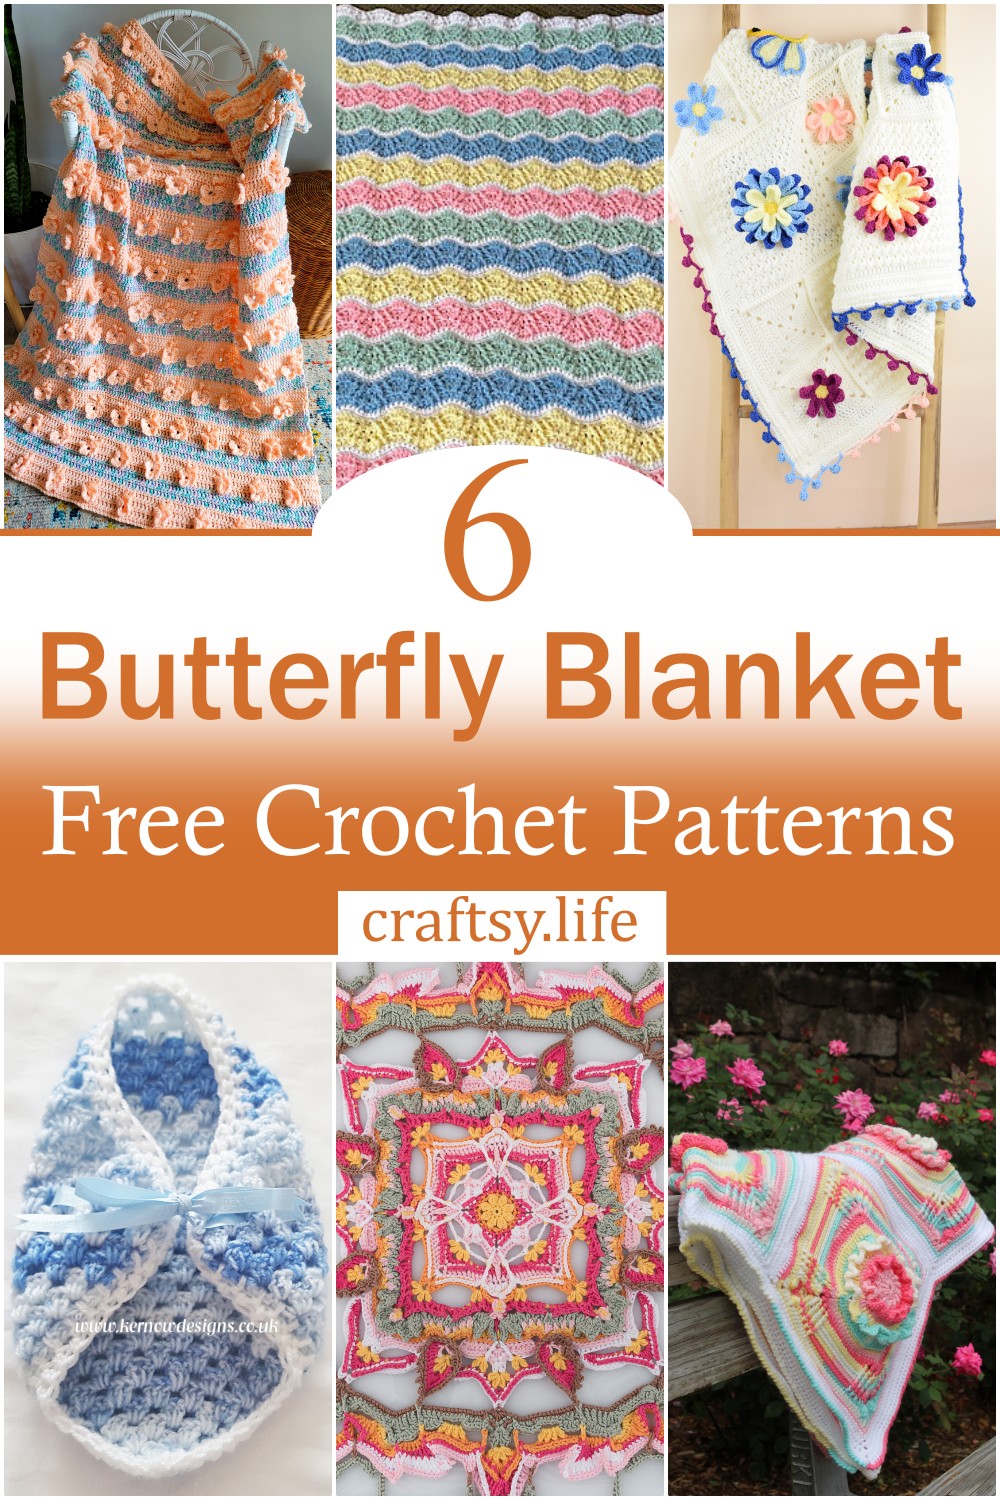 Free Crochet Butterfly Blanket Patterns 1